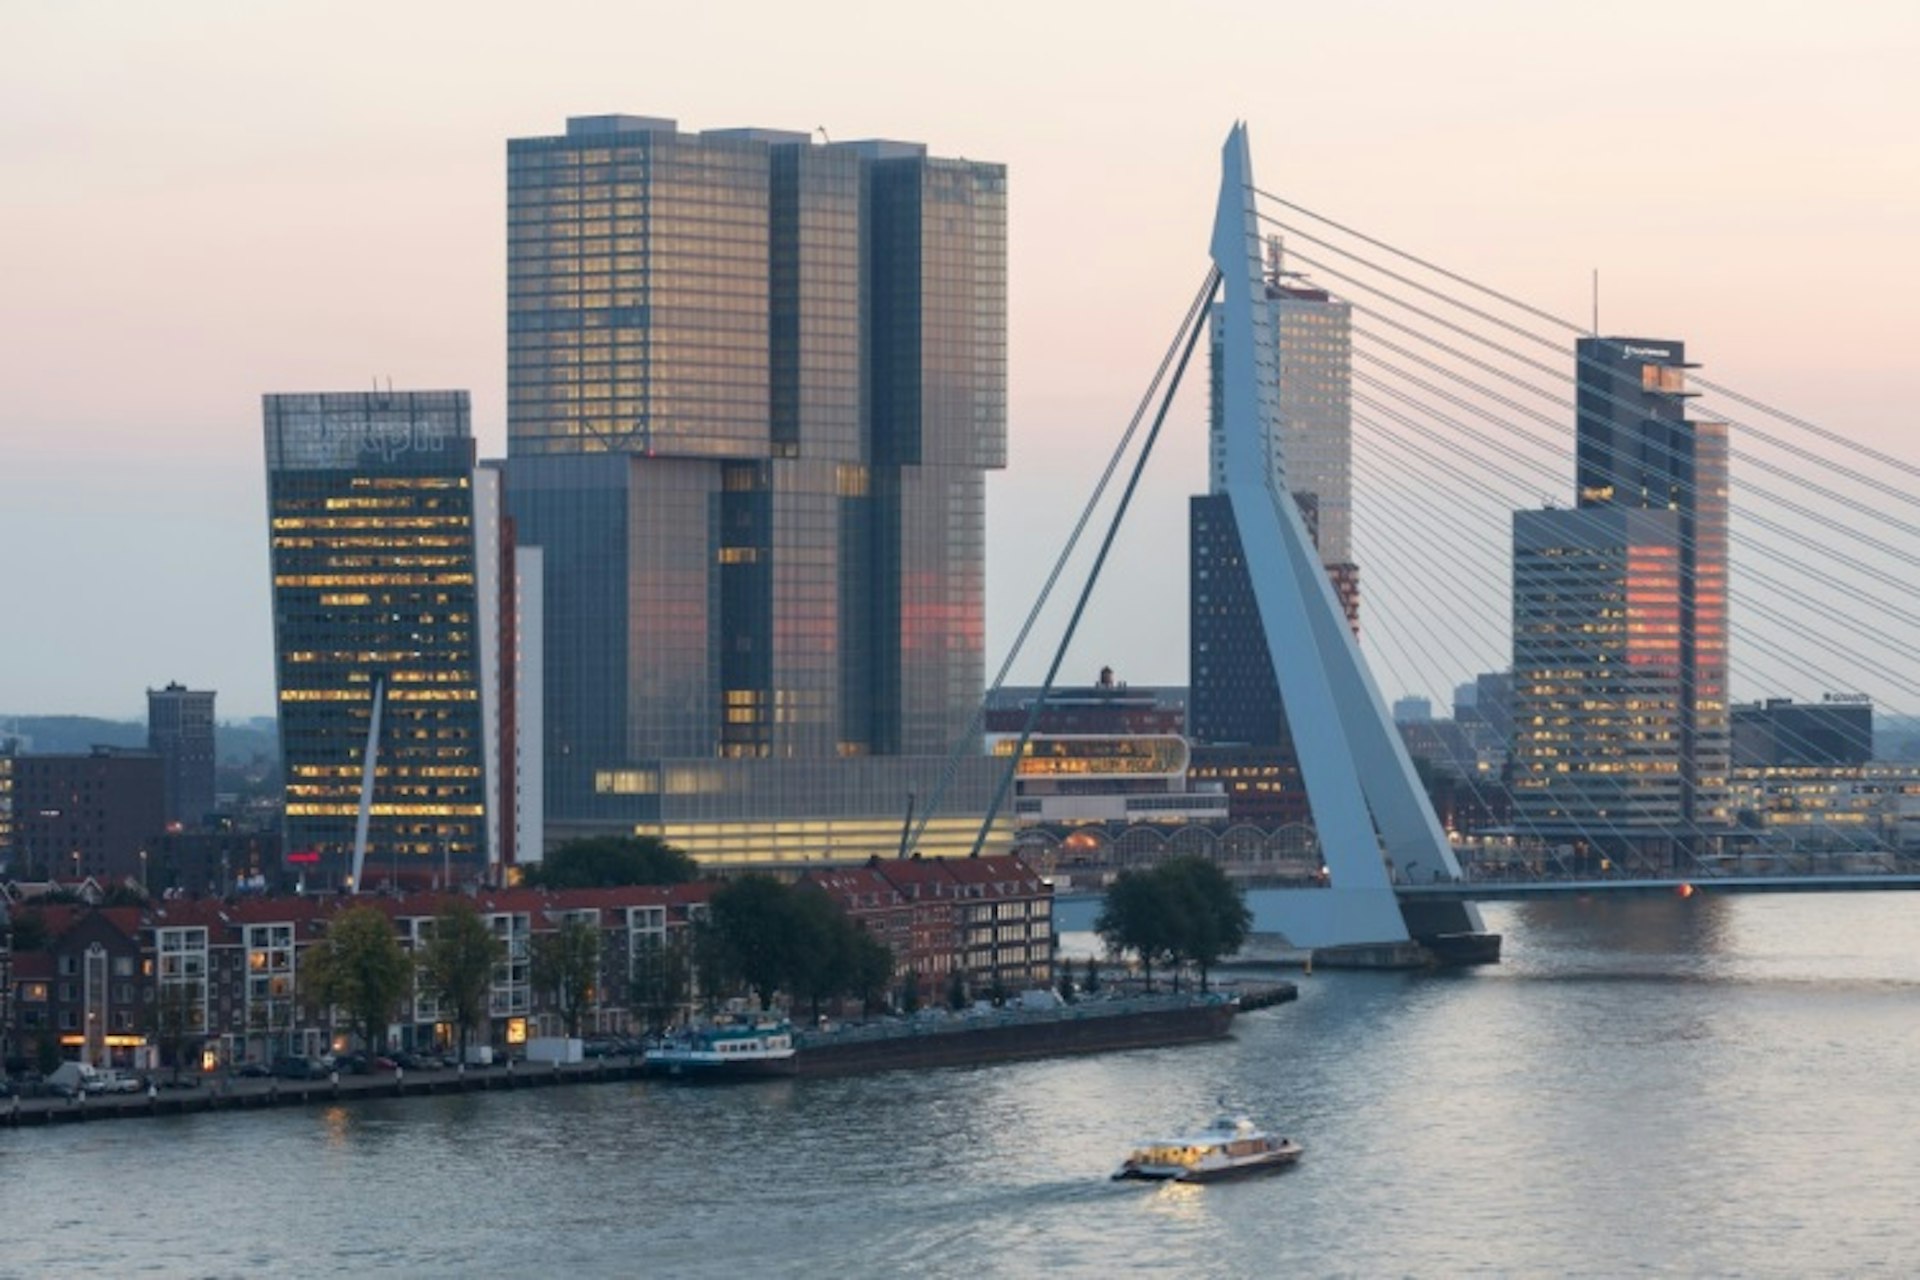 Features - De Rotterdam and Erasmus Bridge